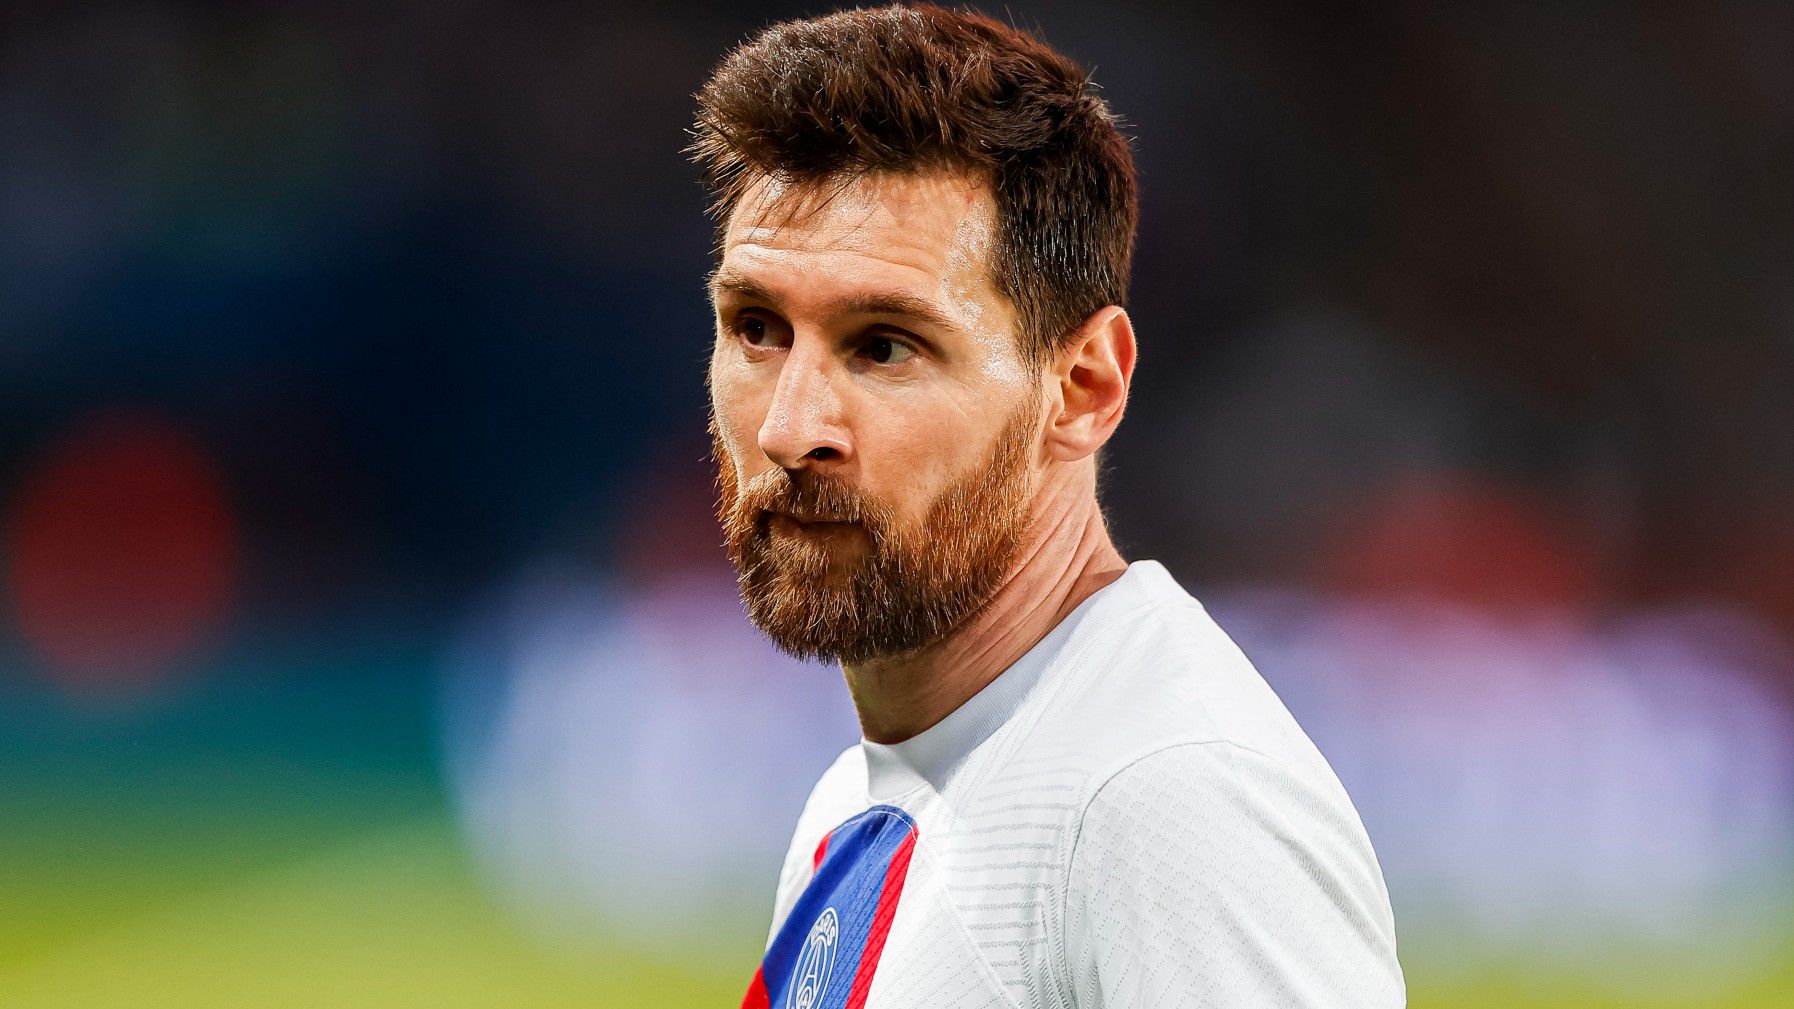 Lionel Messi a hírek szerint a világbajnokság után dönt majd arról, hogy hol futballozik a következő idénytől (Fotó: Getty Images)